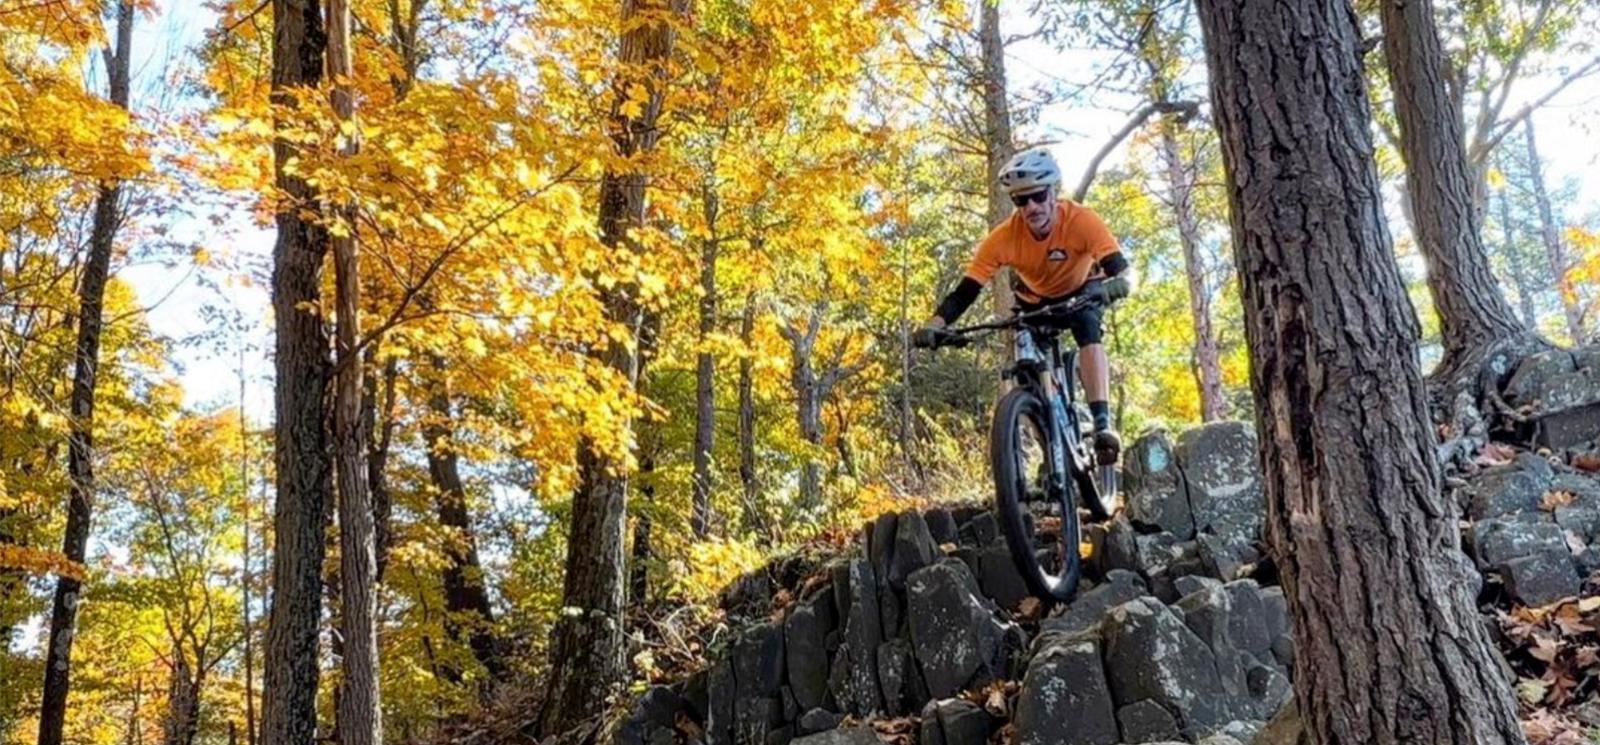 Un hombre en bicicleta de montaña bajando rocas en el bosque (Instagram@mikc.ferraro)